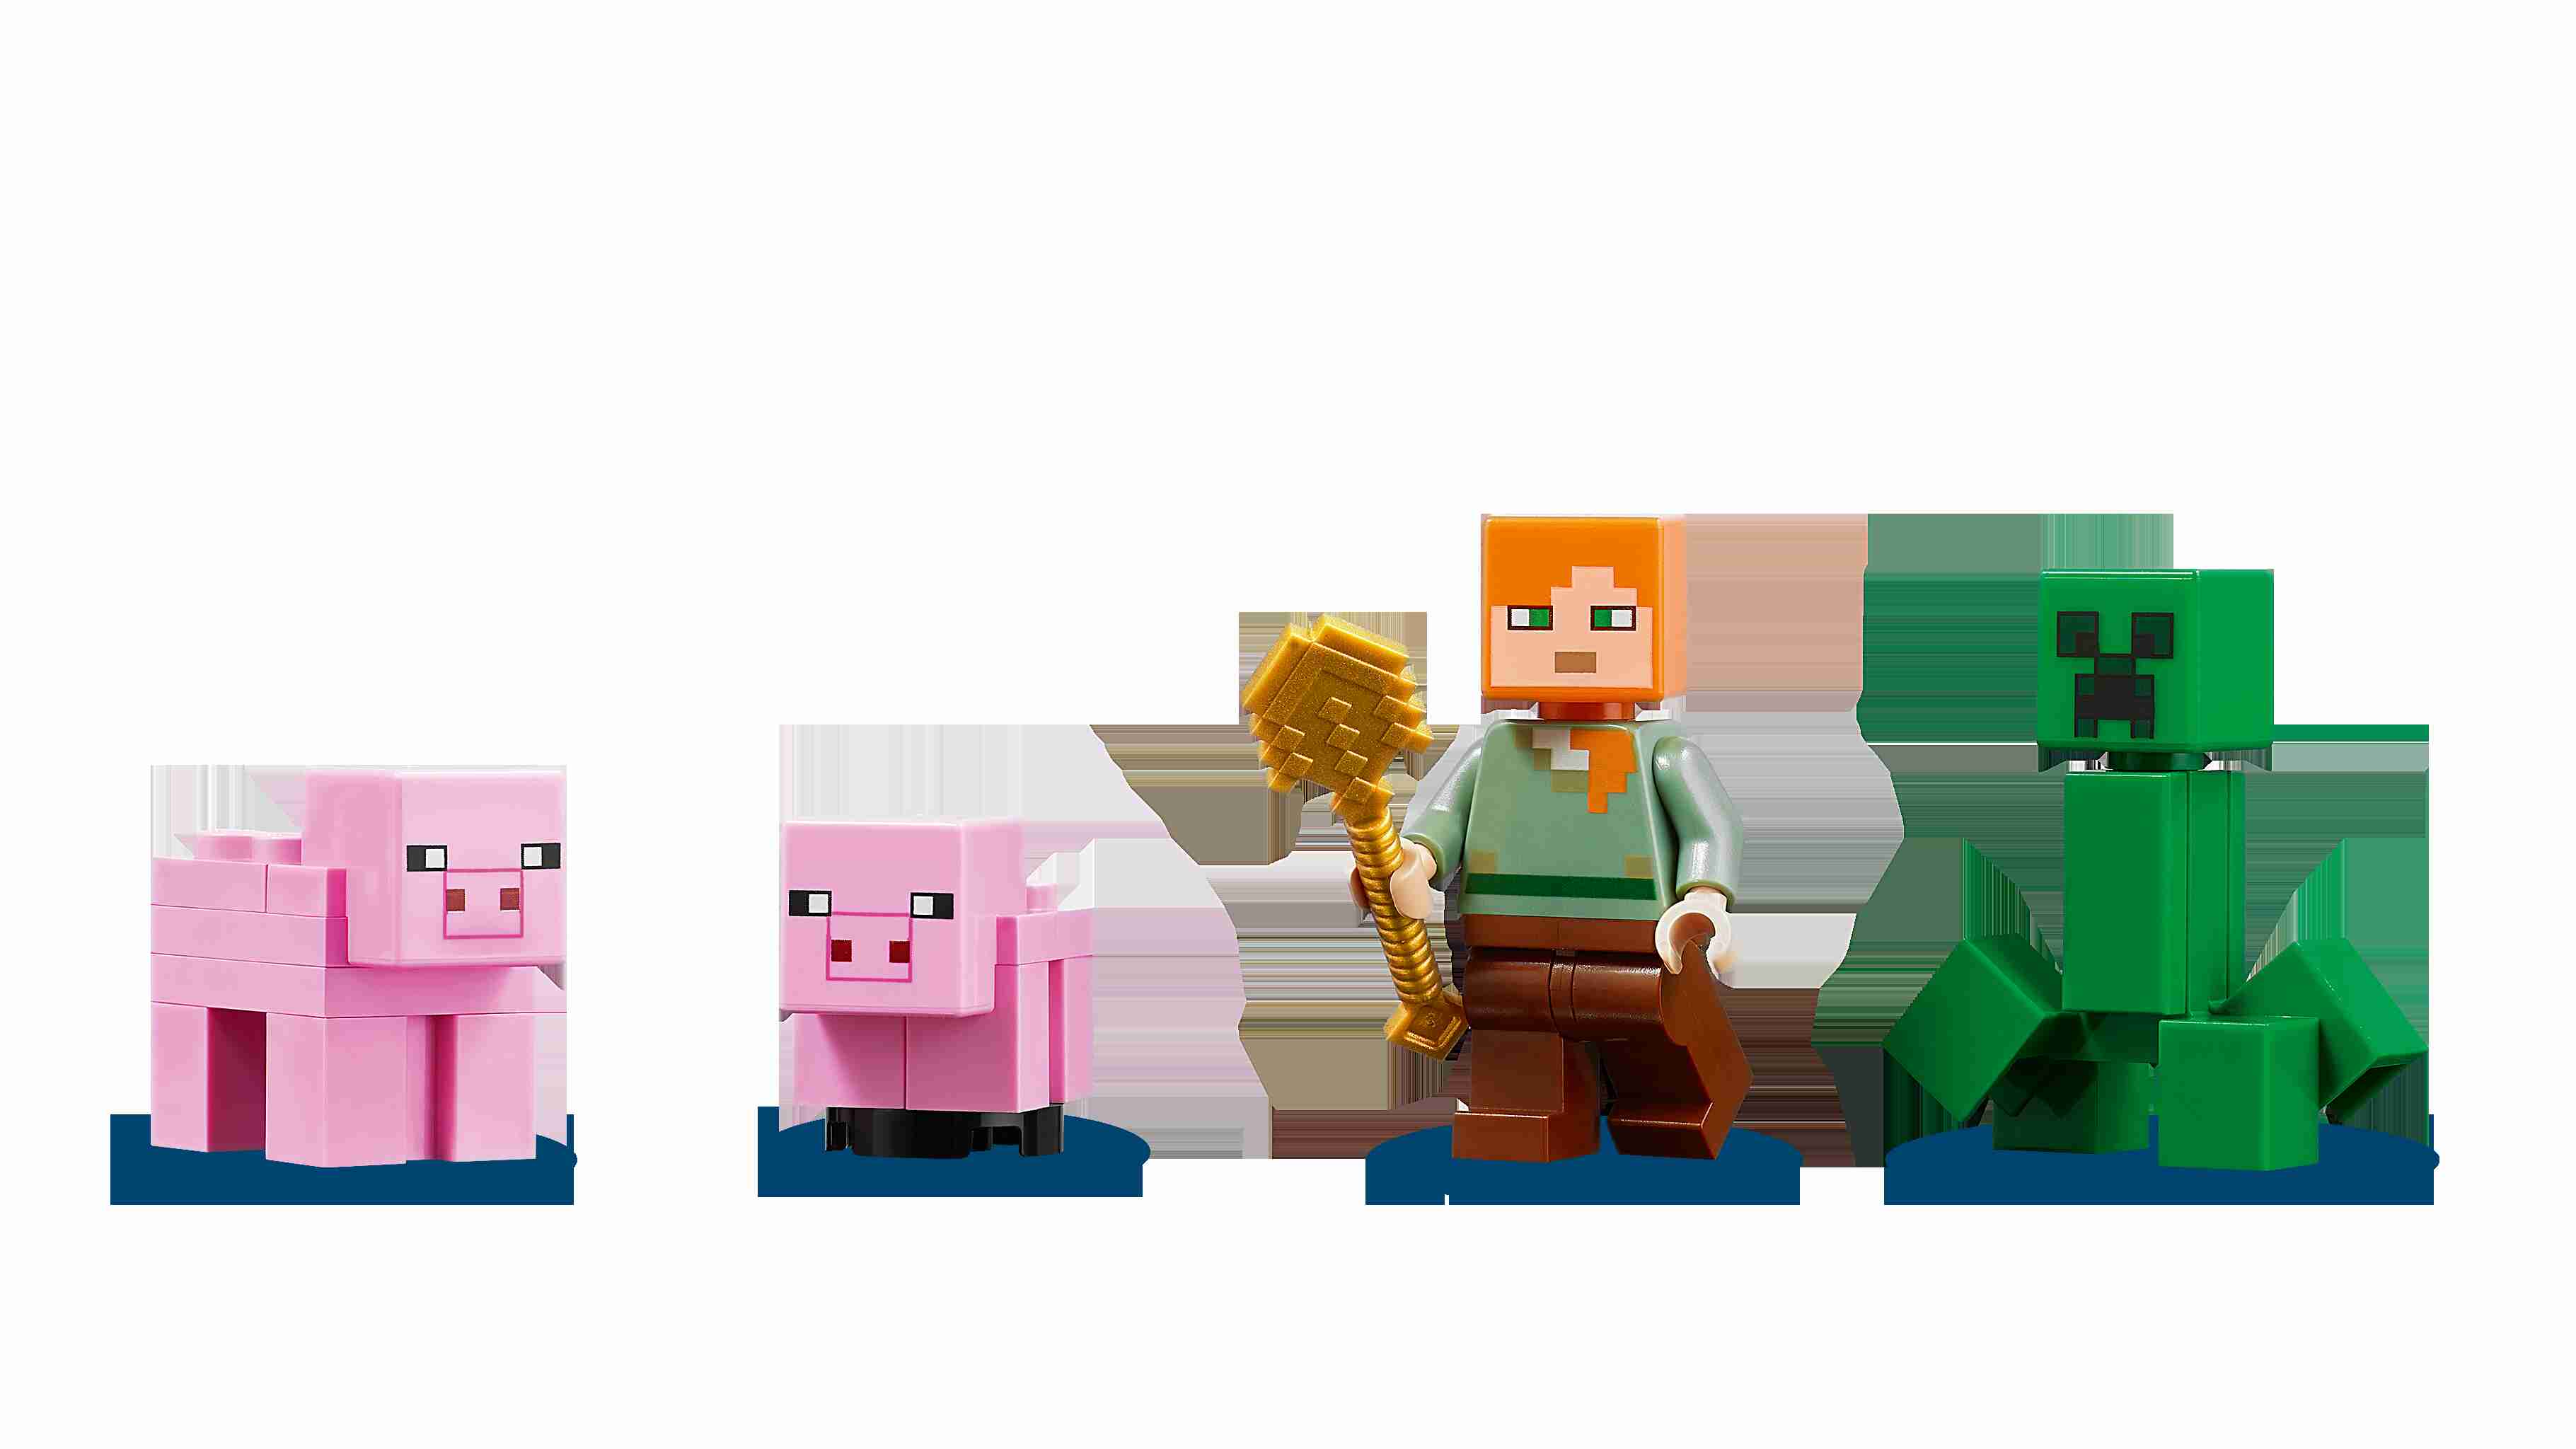 LEGO 21170 Minecraft Das Schweinehaus, Alex, Creeper, 2 Schweine:  Lobigo.de: Spielzeug